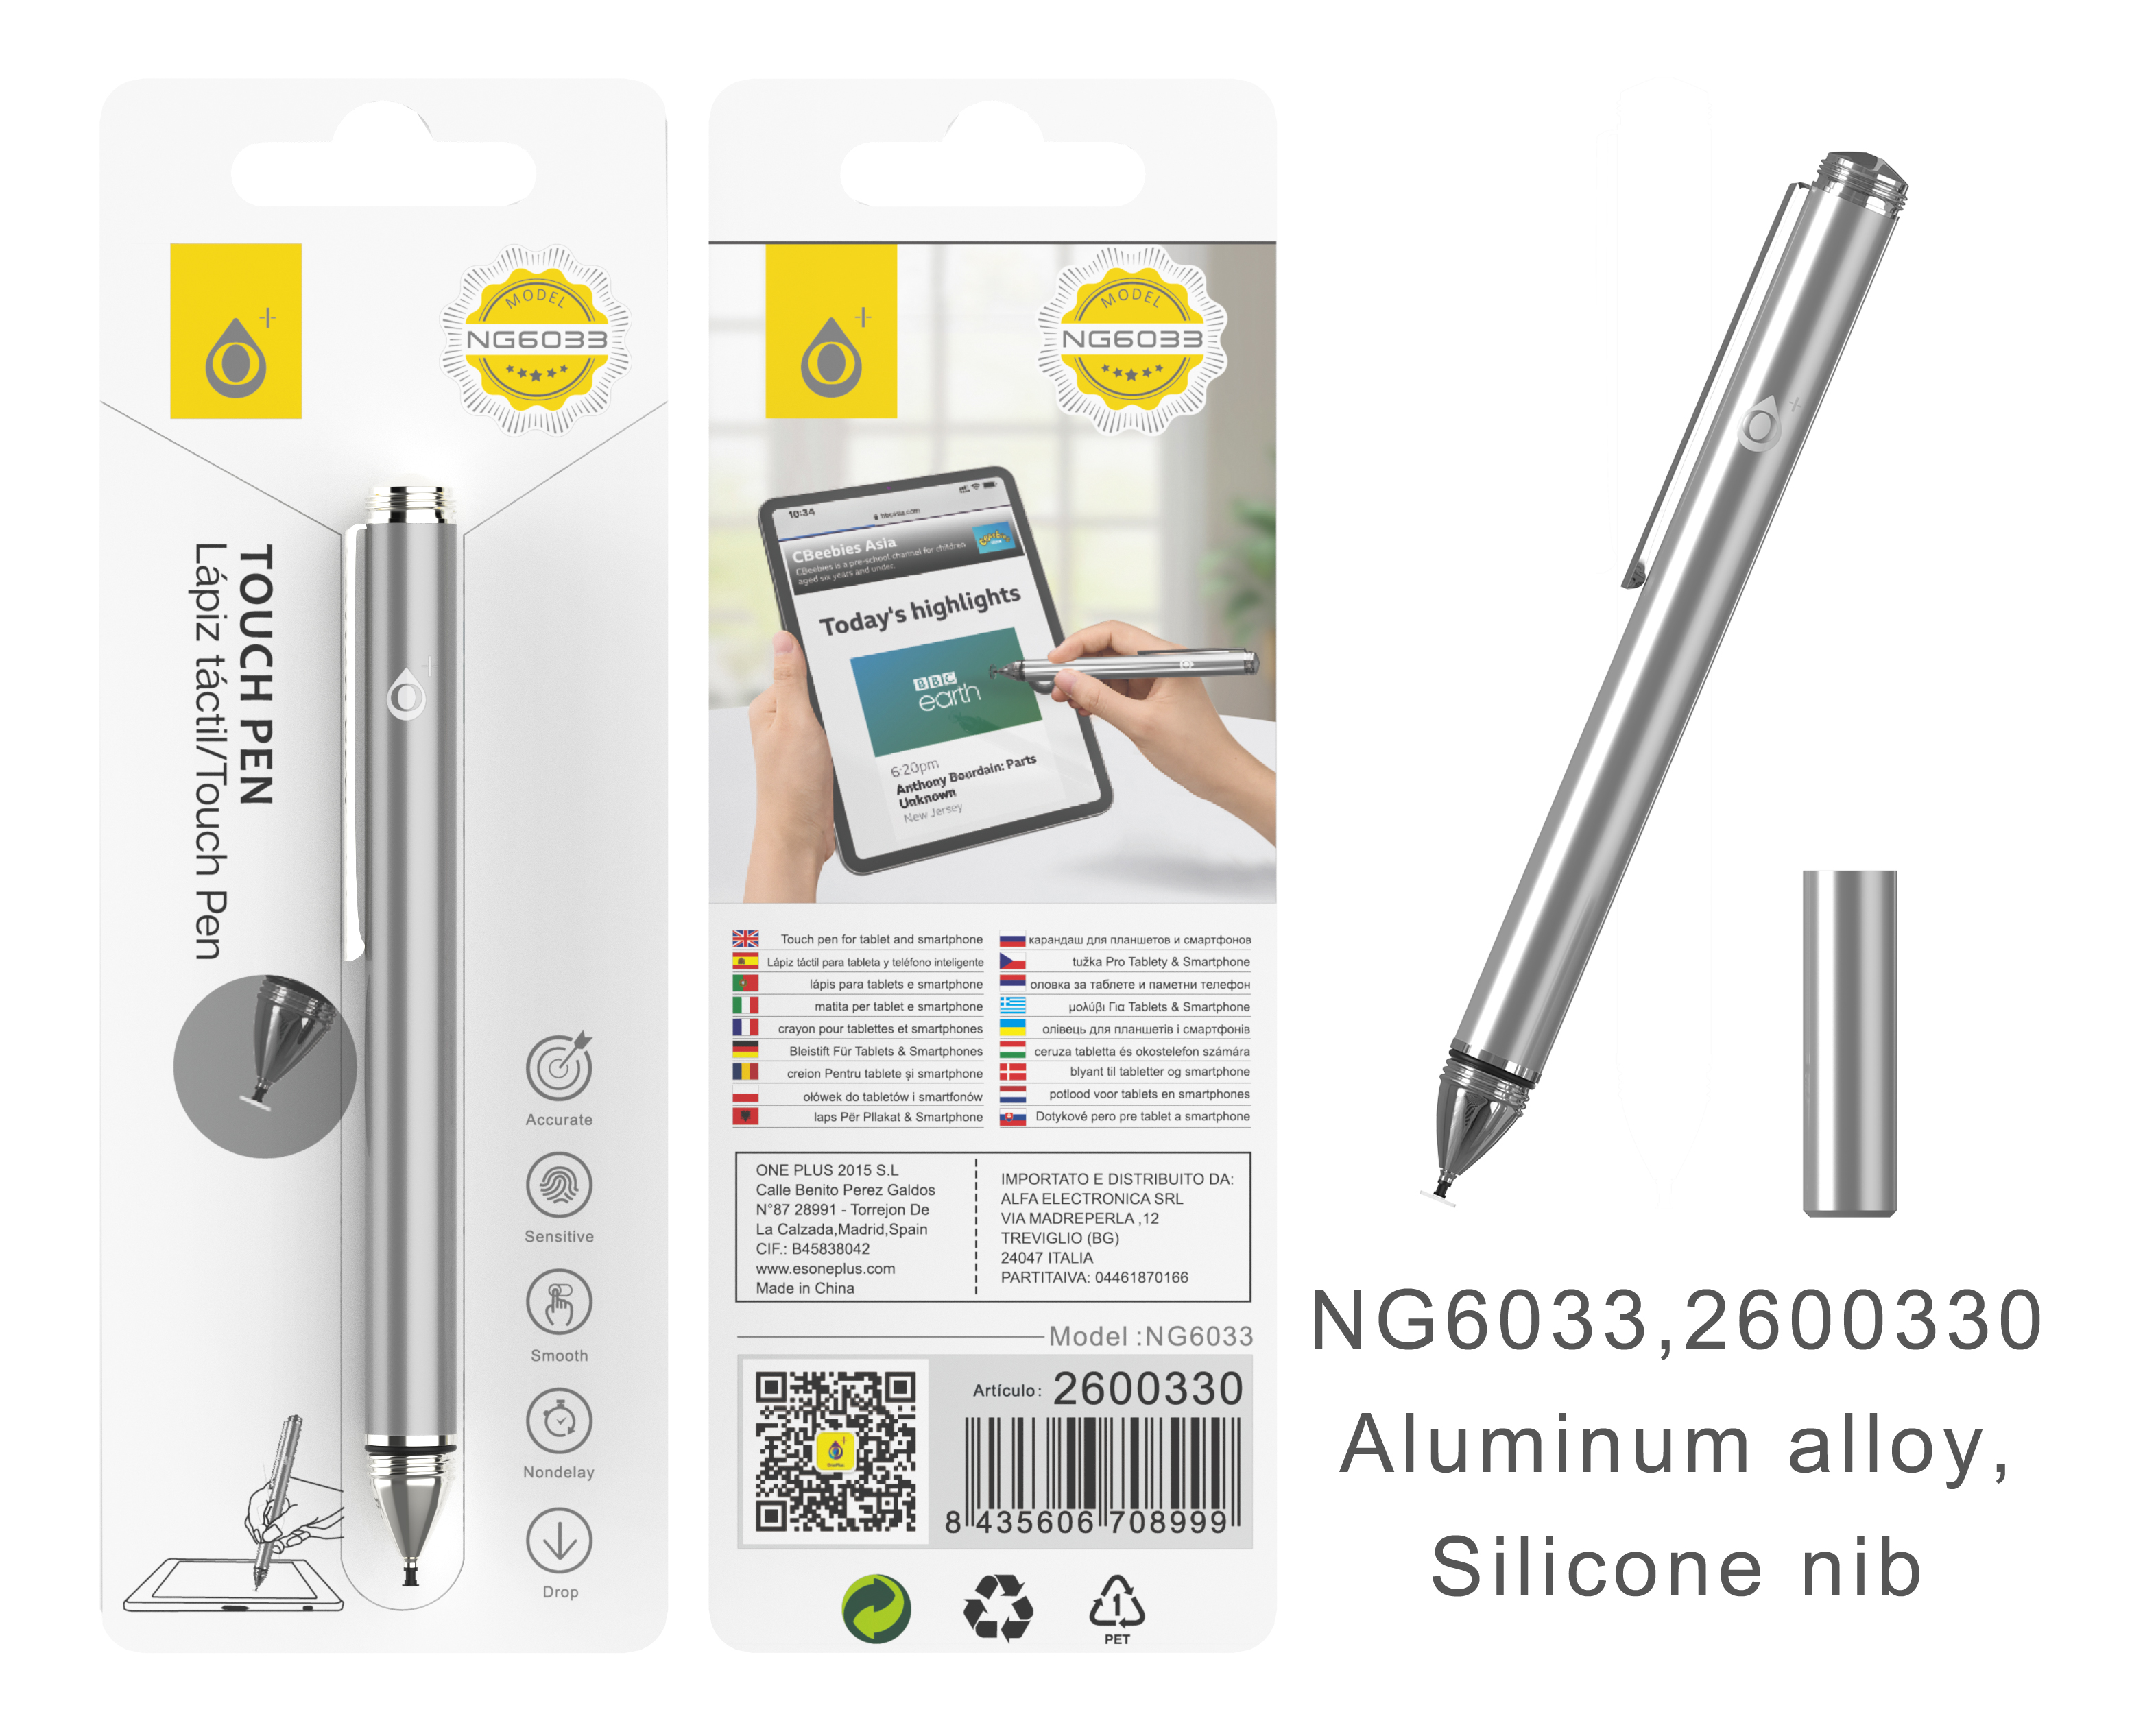 NG6033 PL Puntero Aluminio Fino con Punta de Disco Silicona para Moviles y Tablets, Plata